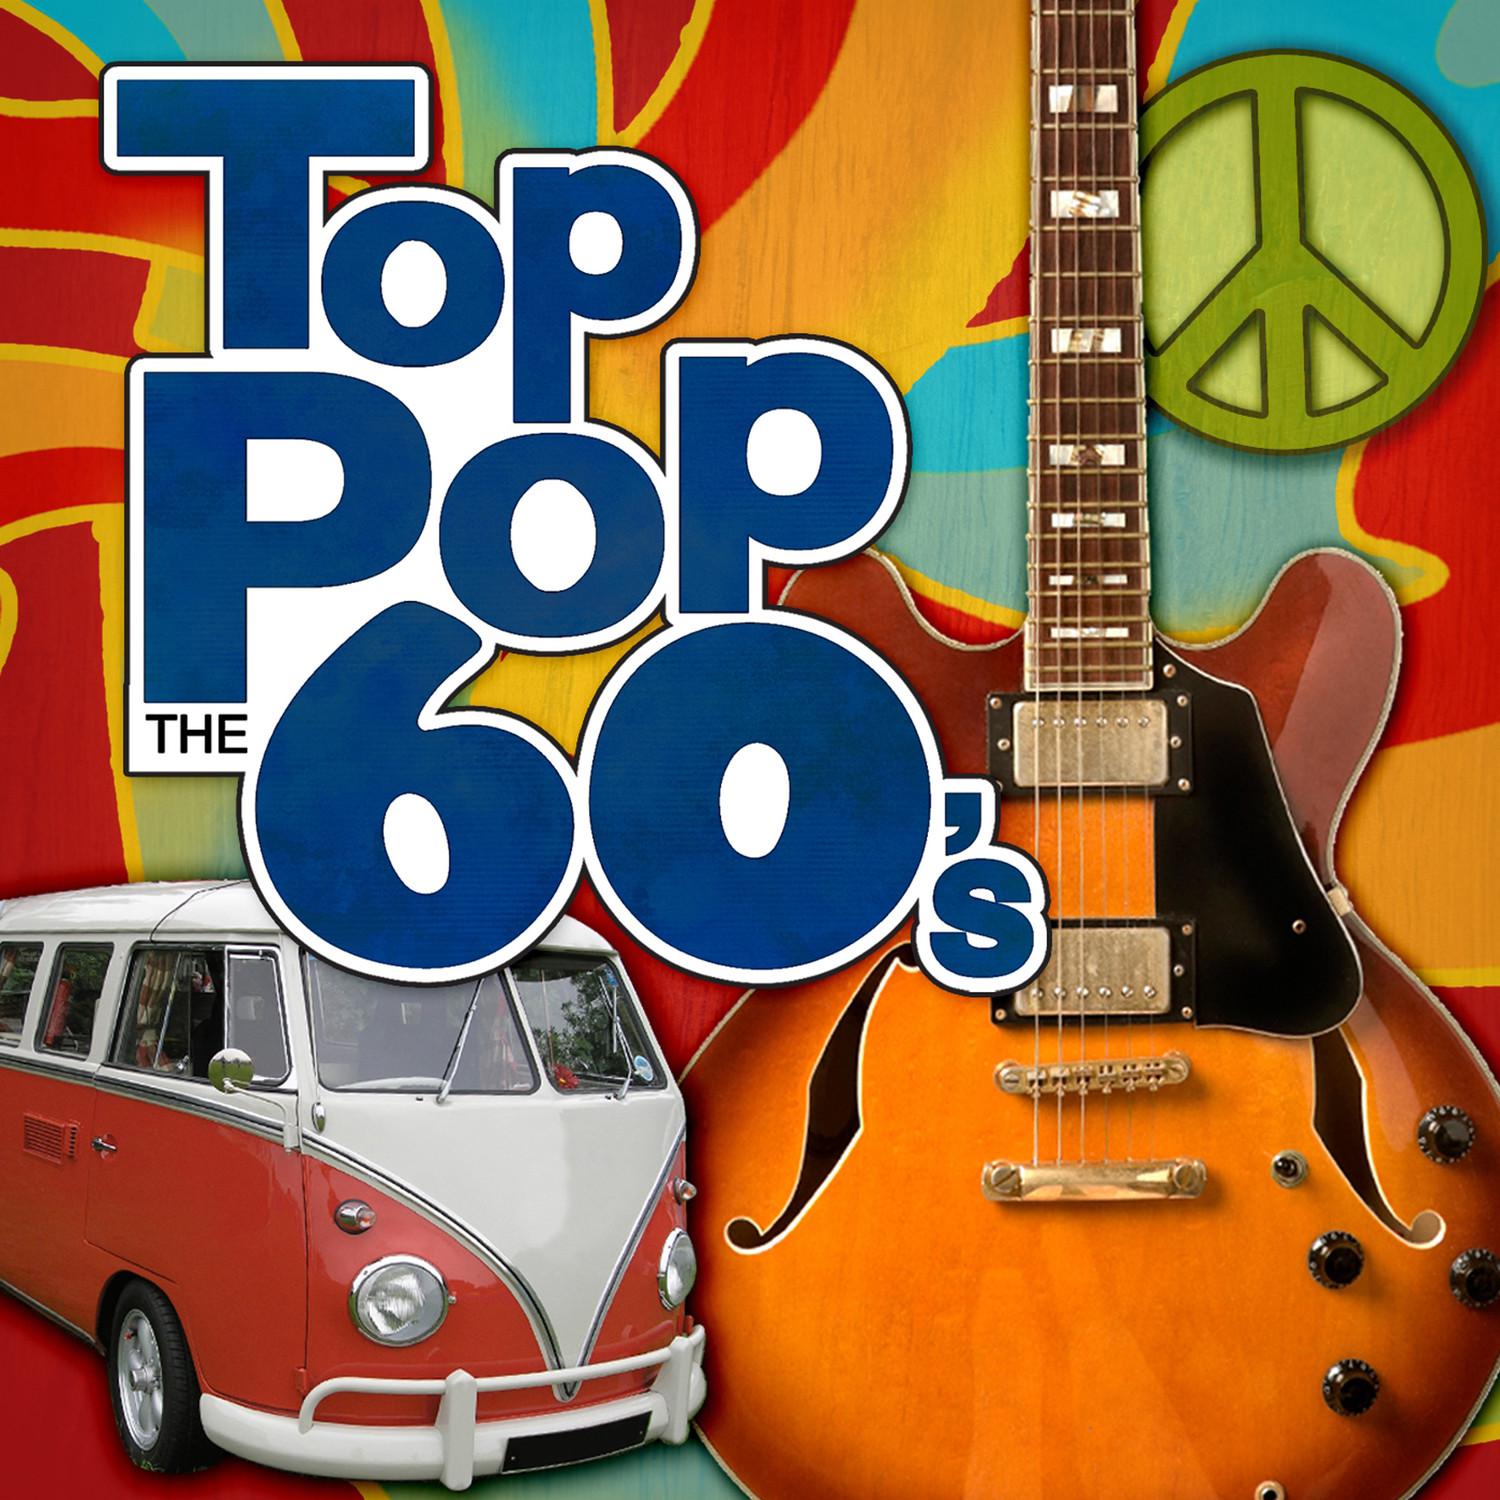 Top Pop: The 60's